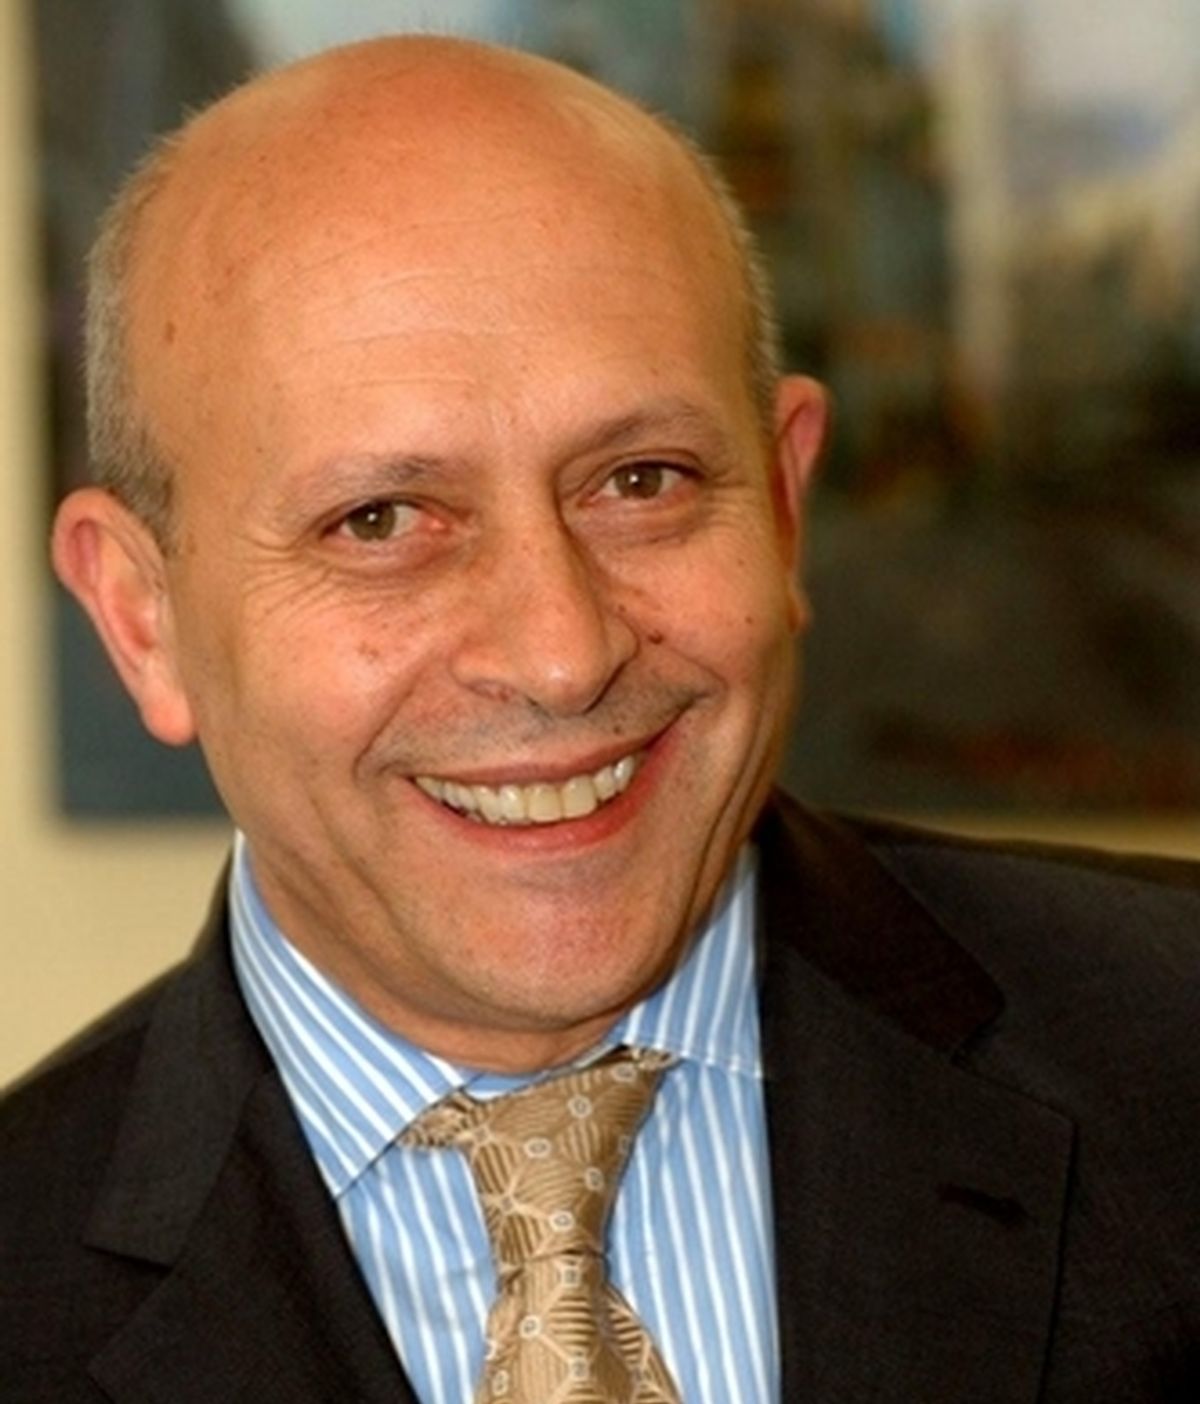 José Ignacio Wert, Ministerio de Educación y Cultura